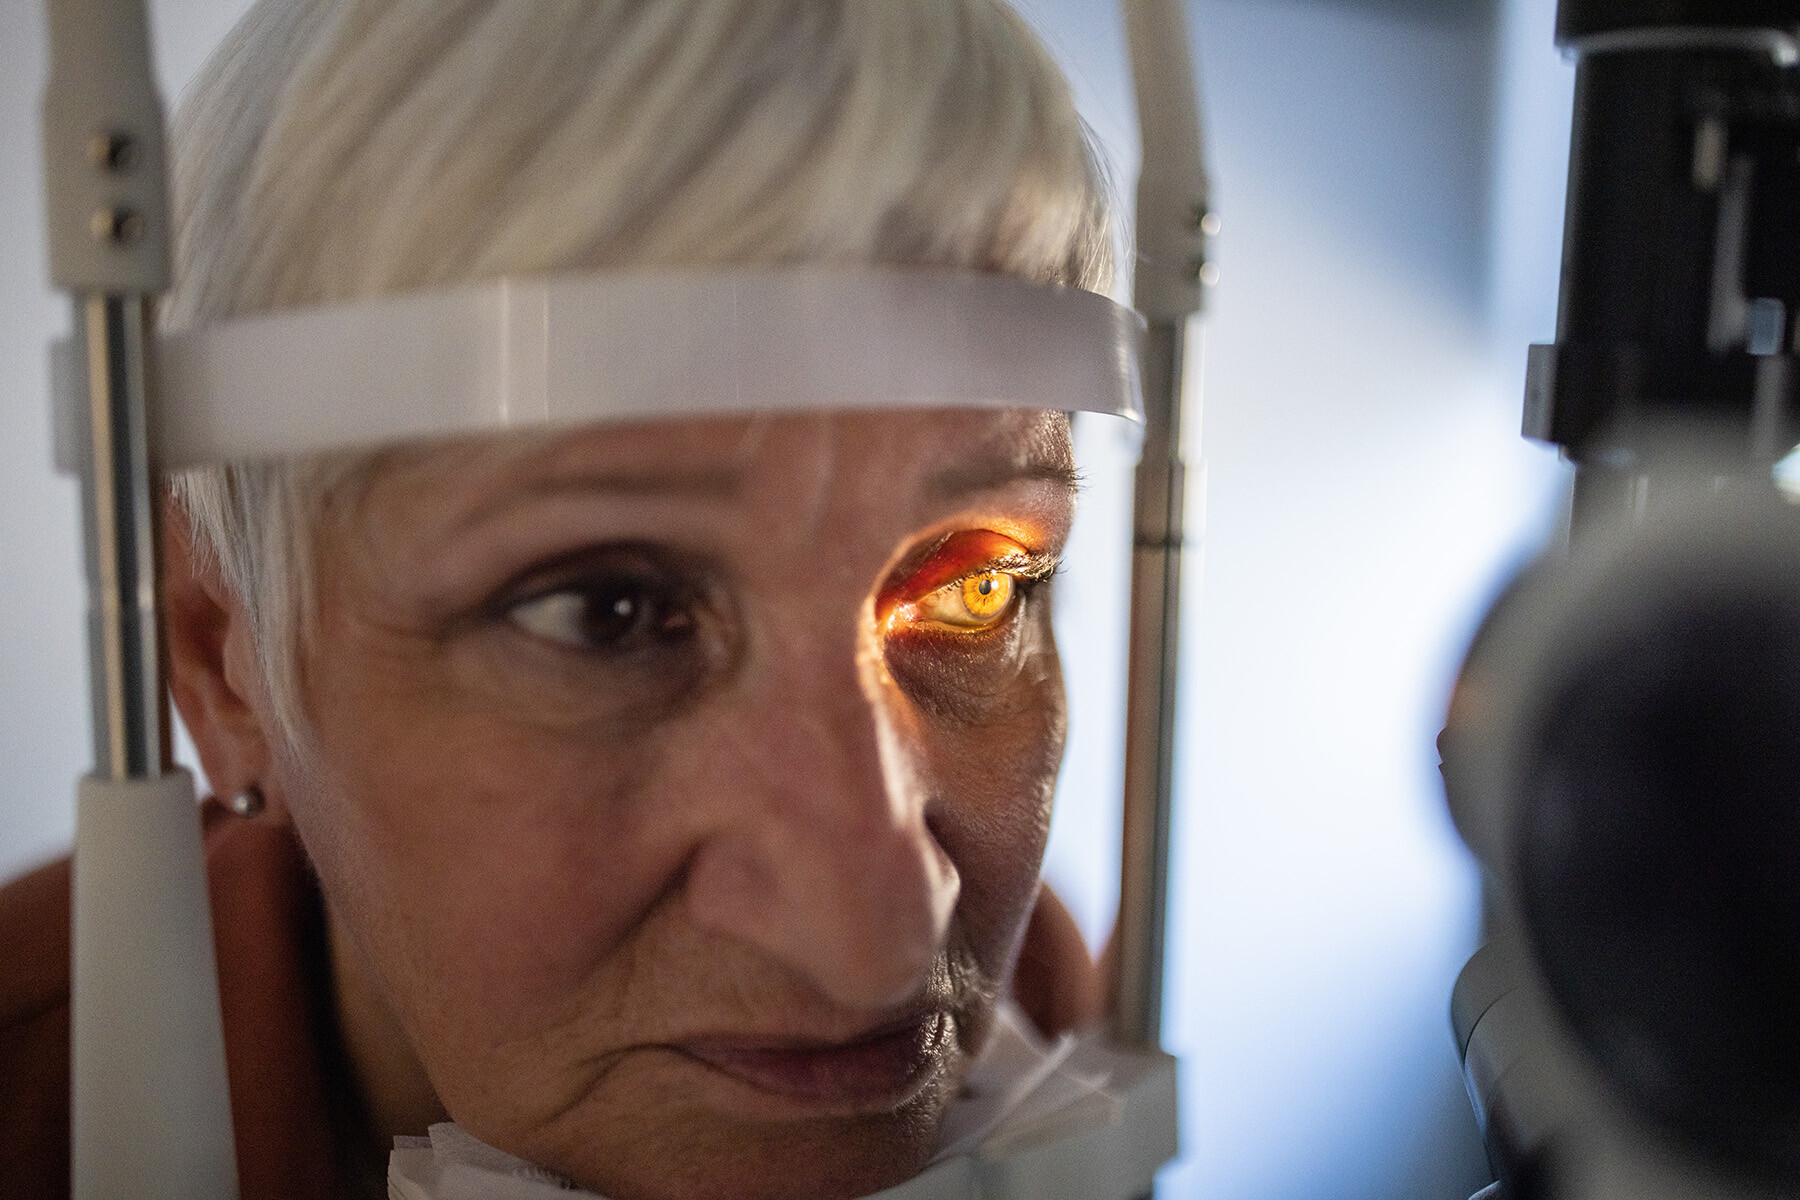 Das Gesicht einer älteren Frau während einer Augenuntersuchung in Nahaufnahme